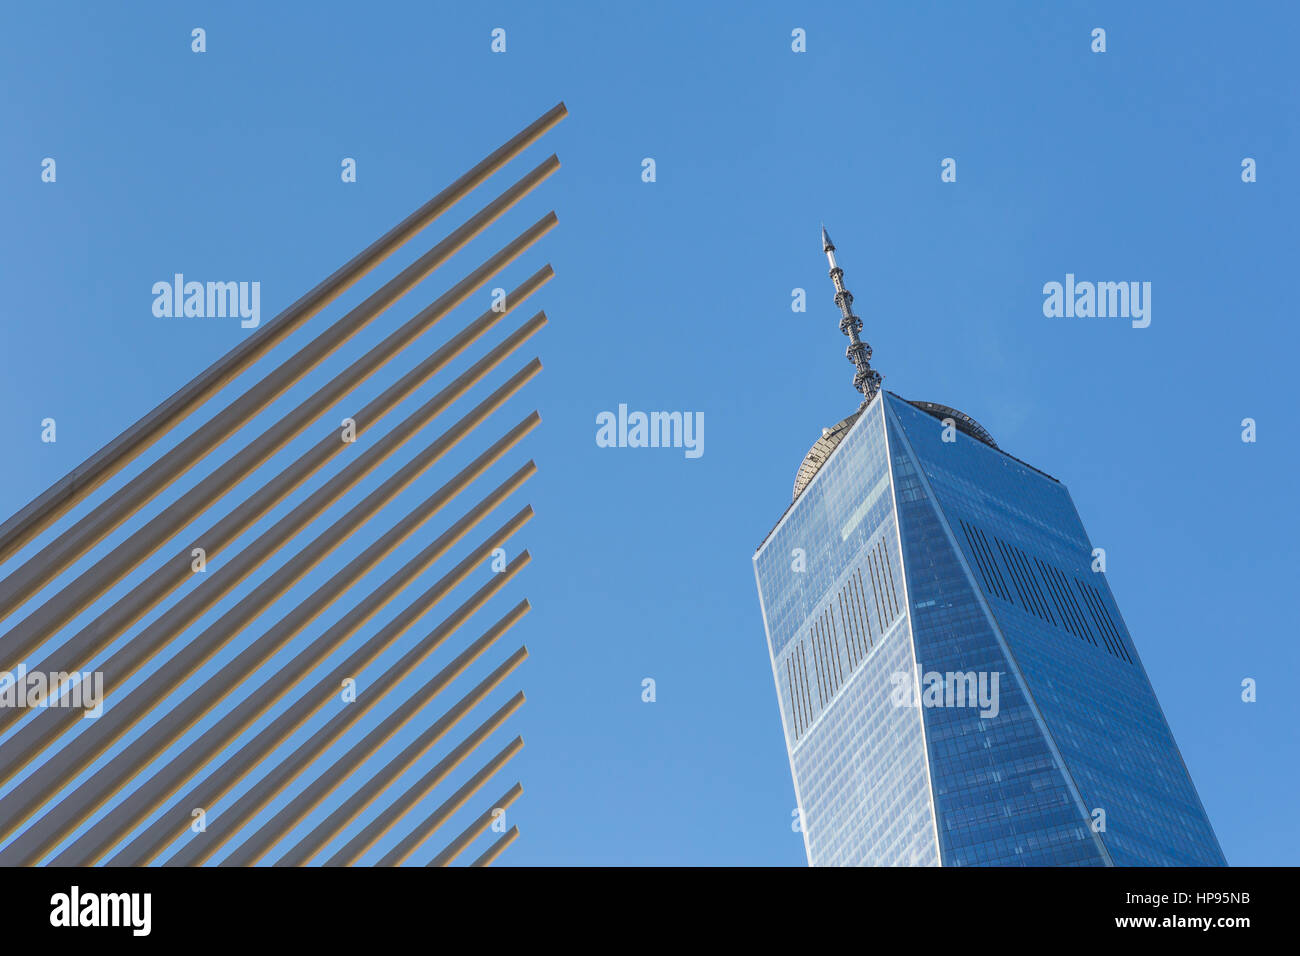 Die gerippten Flügel des Oculus World Trade Center Transportation Hub Kontrast mit One World Trade Center (Freedom Tower) in New York City. Stockfoto